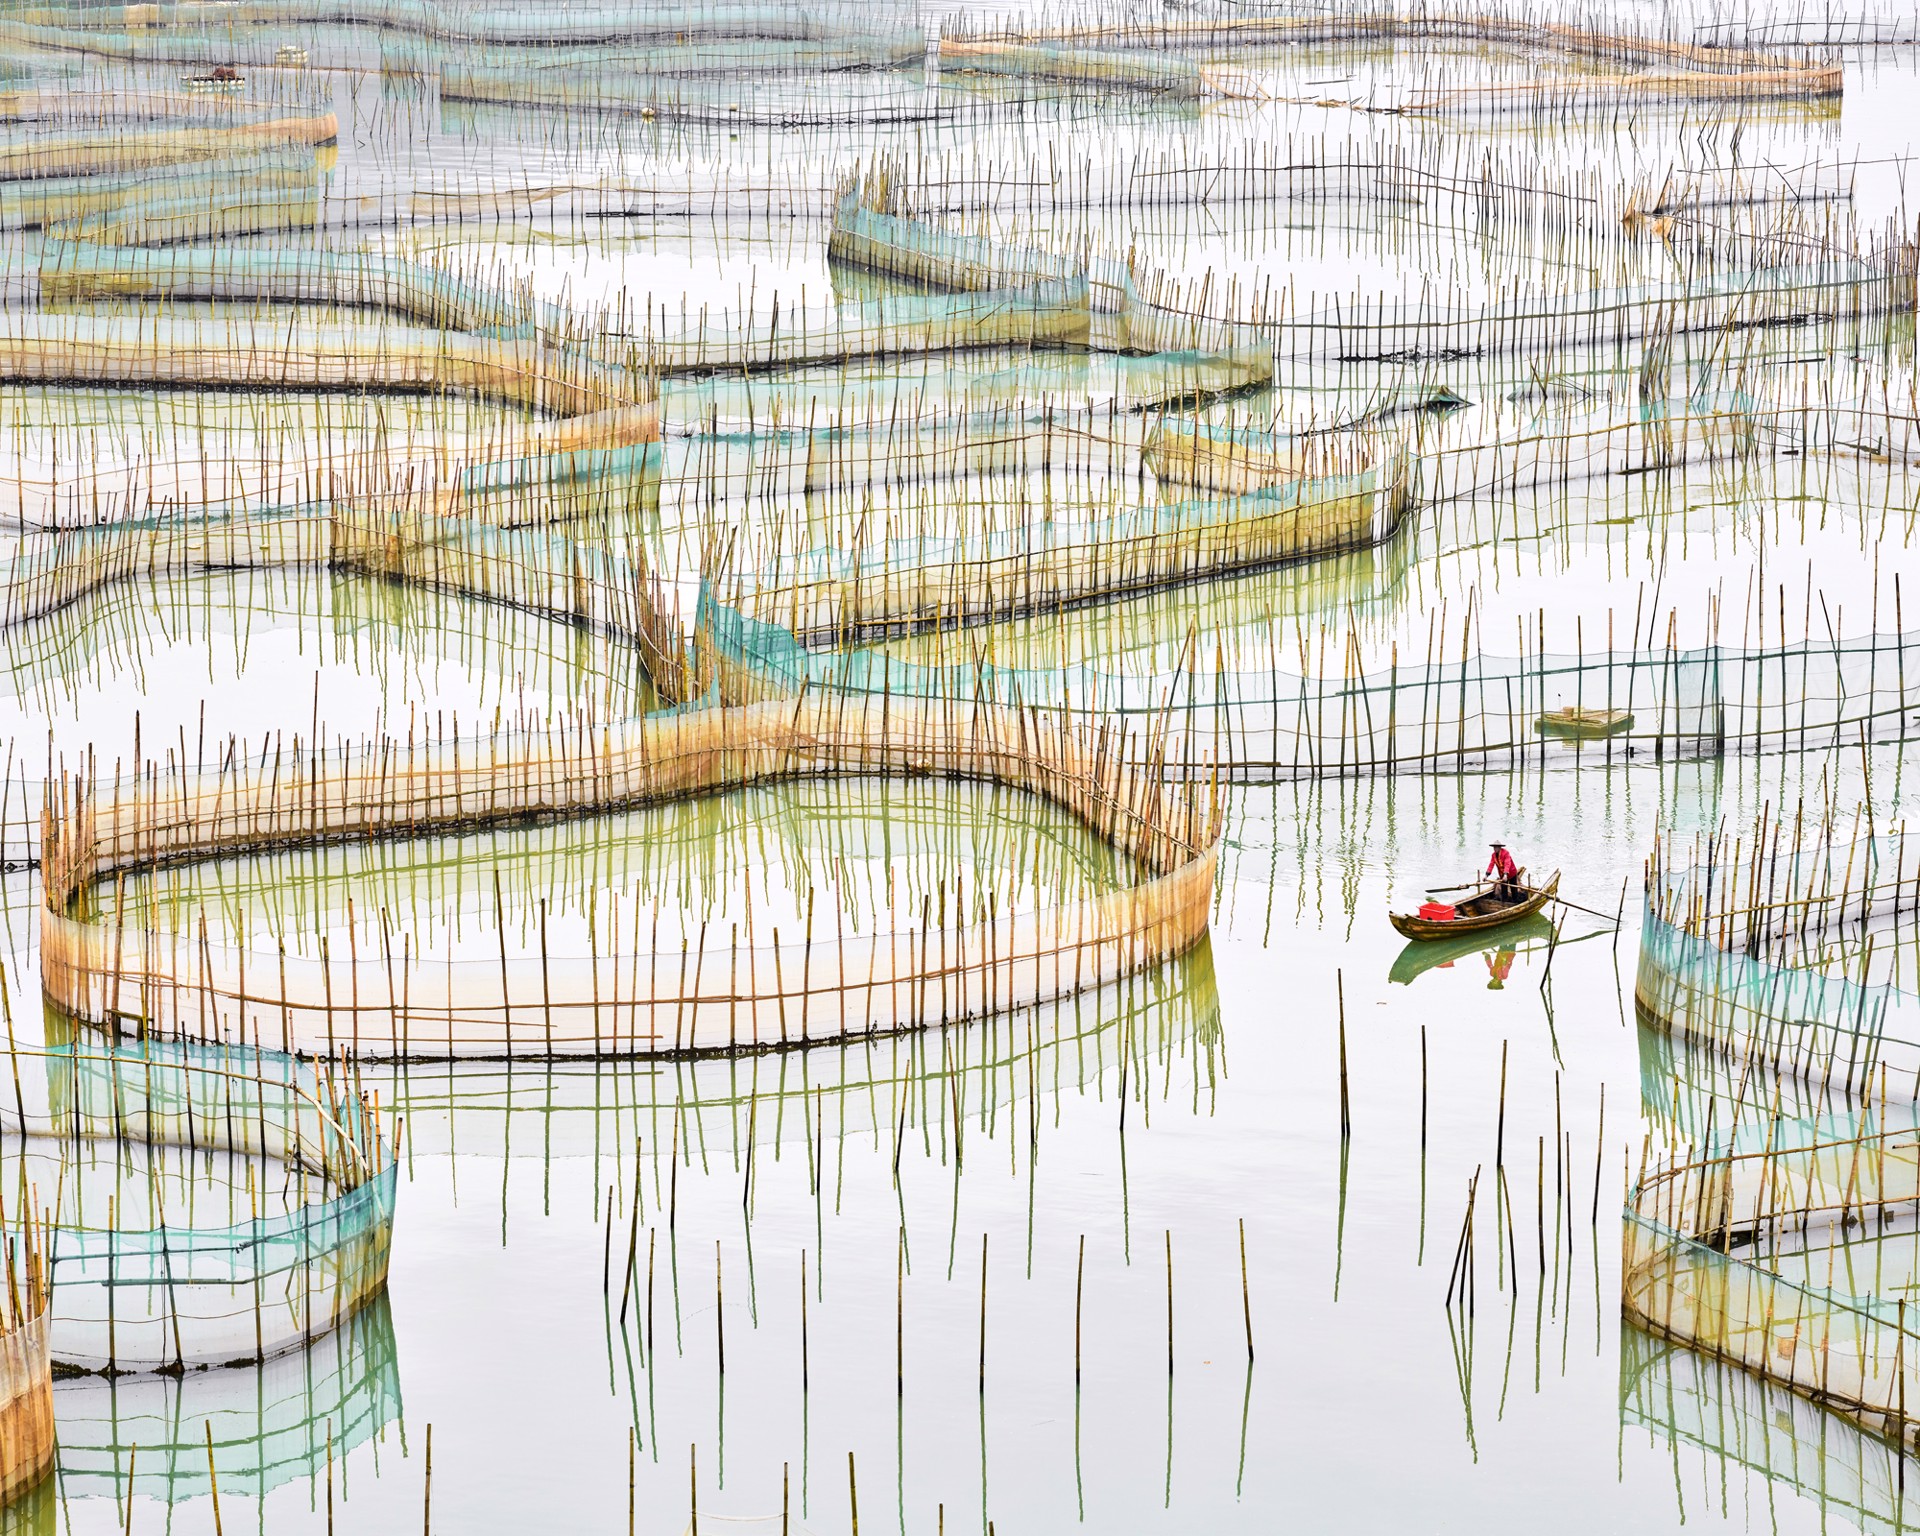 Nets 01, Fujian, China, 2016 by David Burdeny